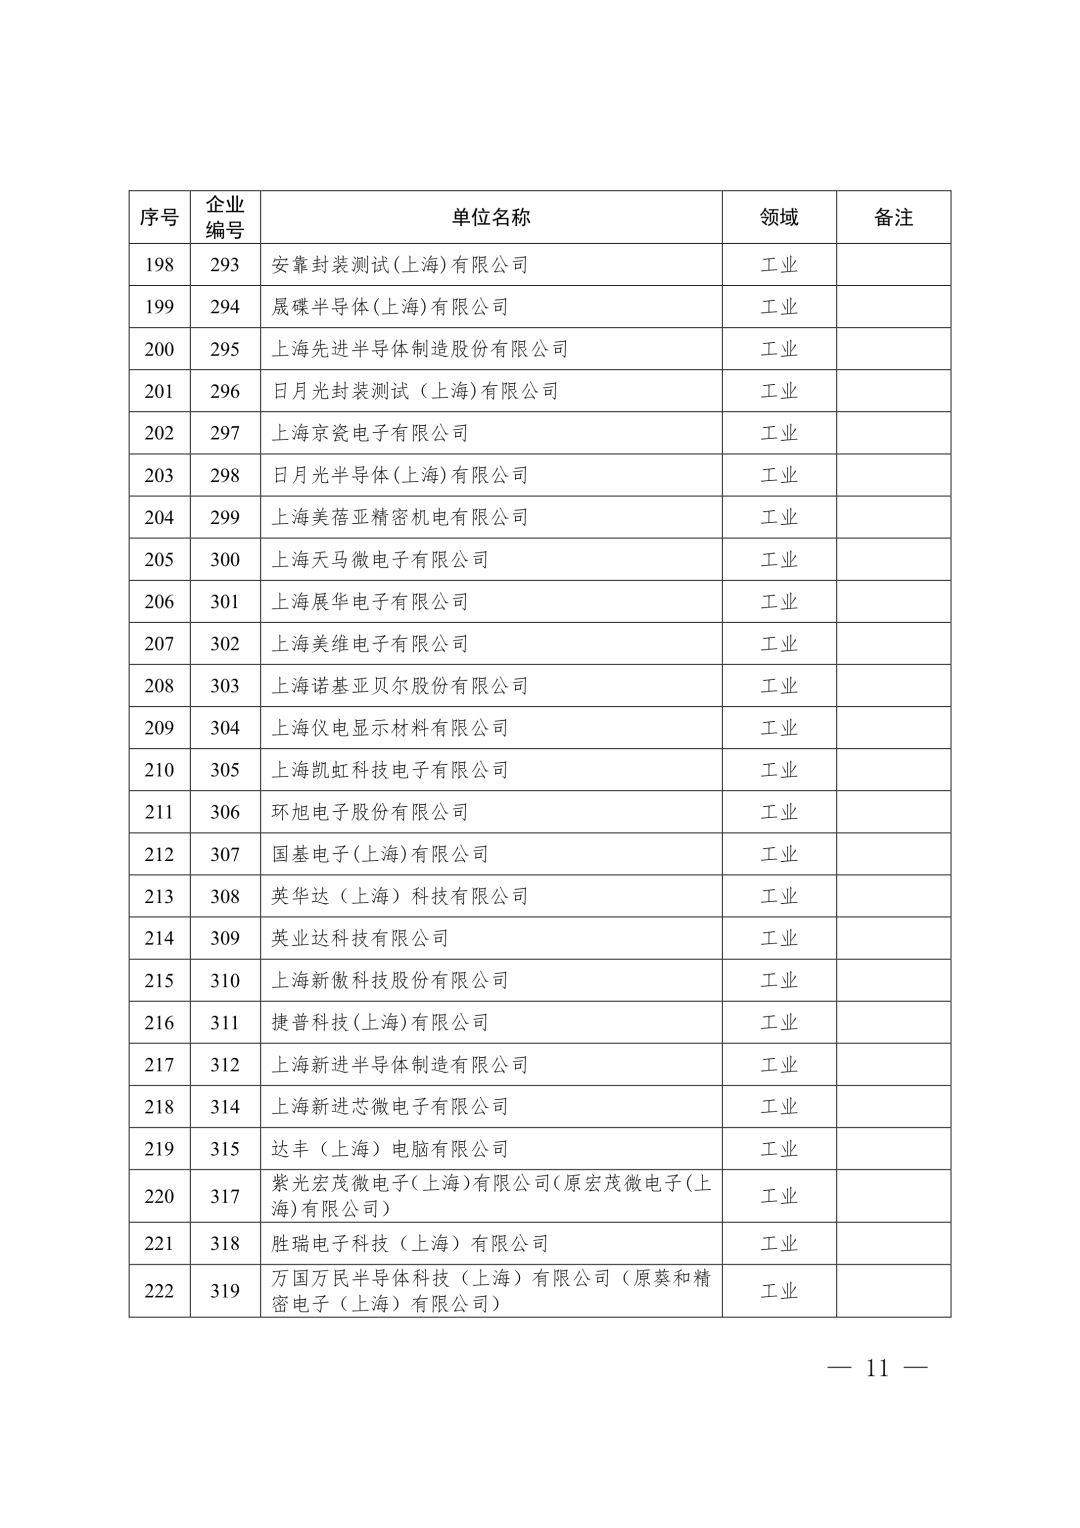 【关注】上海市生态环境局关于印发《上海市纳入碳排放配额管理单位名单（2019版）》及《上海市2019年碳排放配额分配方案》的通知(图11)